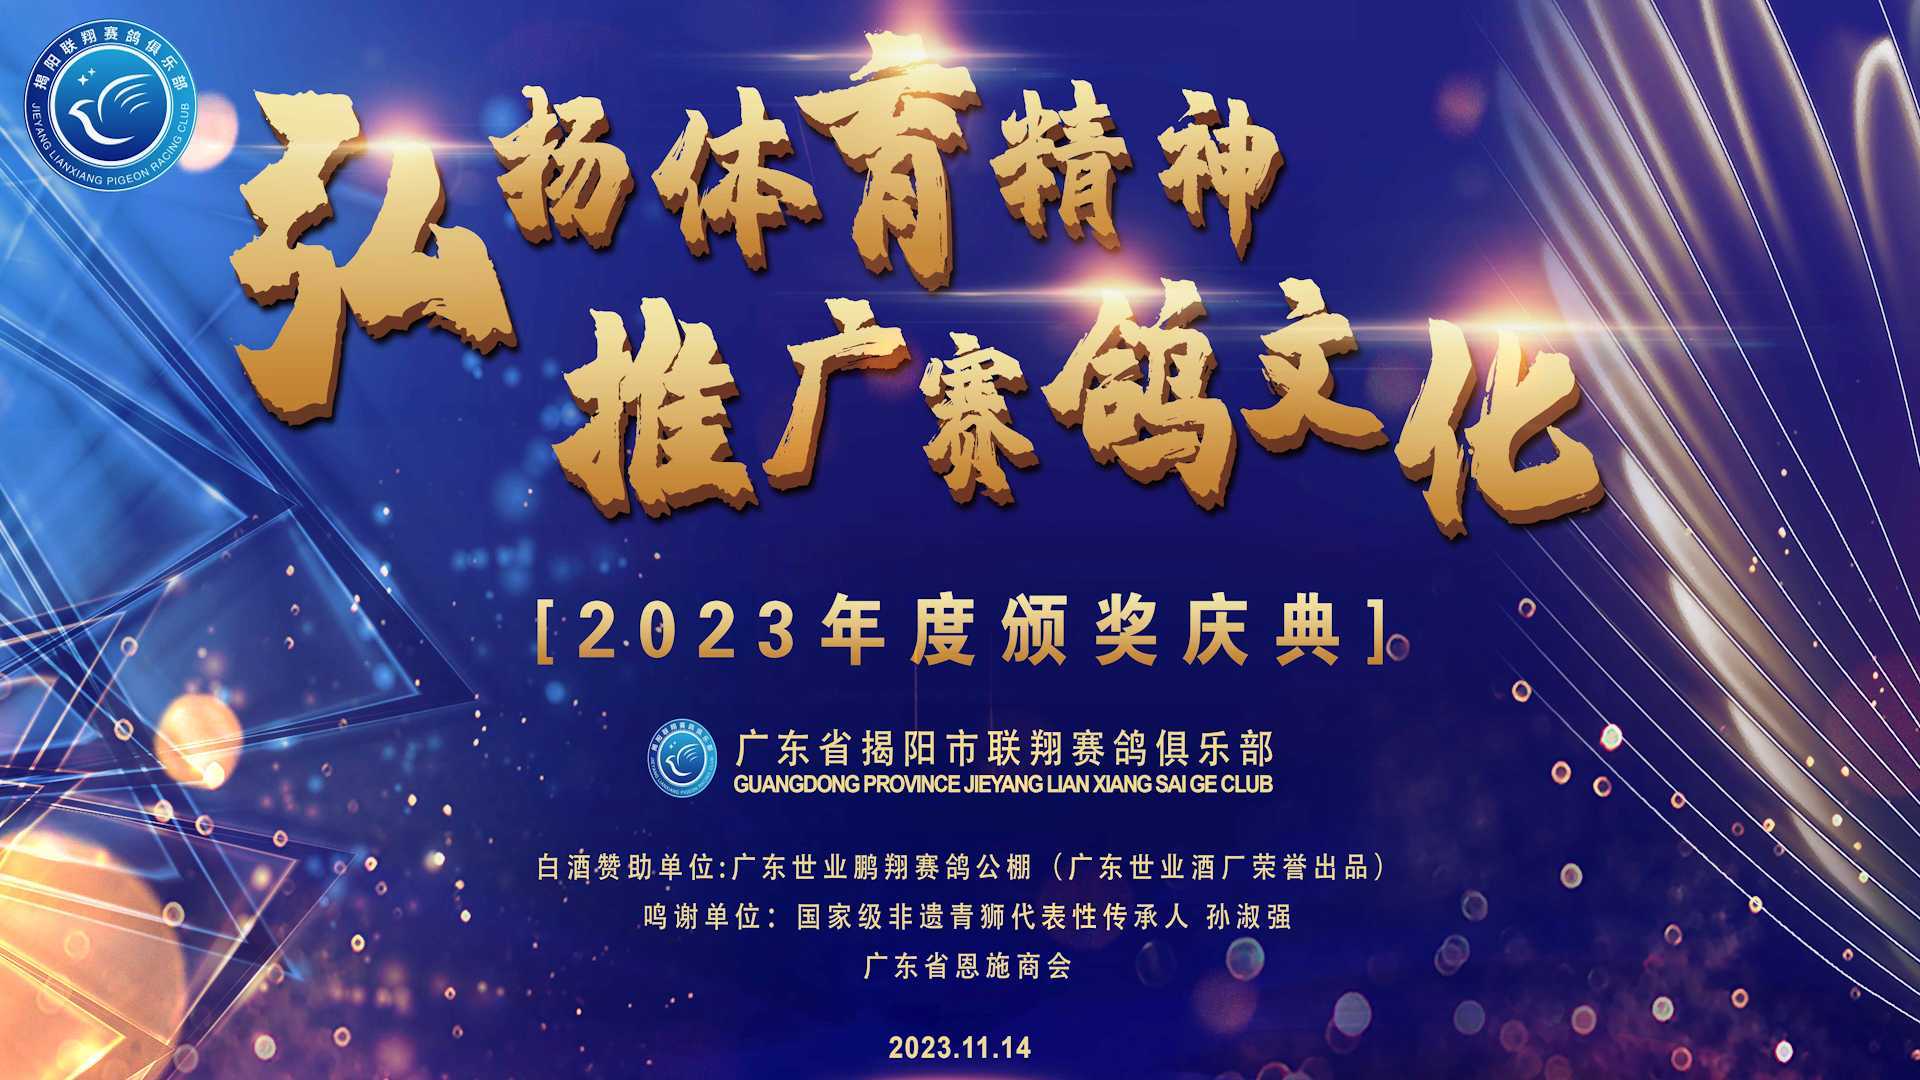 2023年度颁奖庆典 广东省揭阳市联翔俱乐部